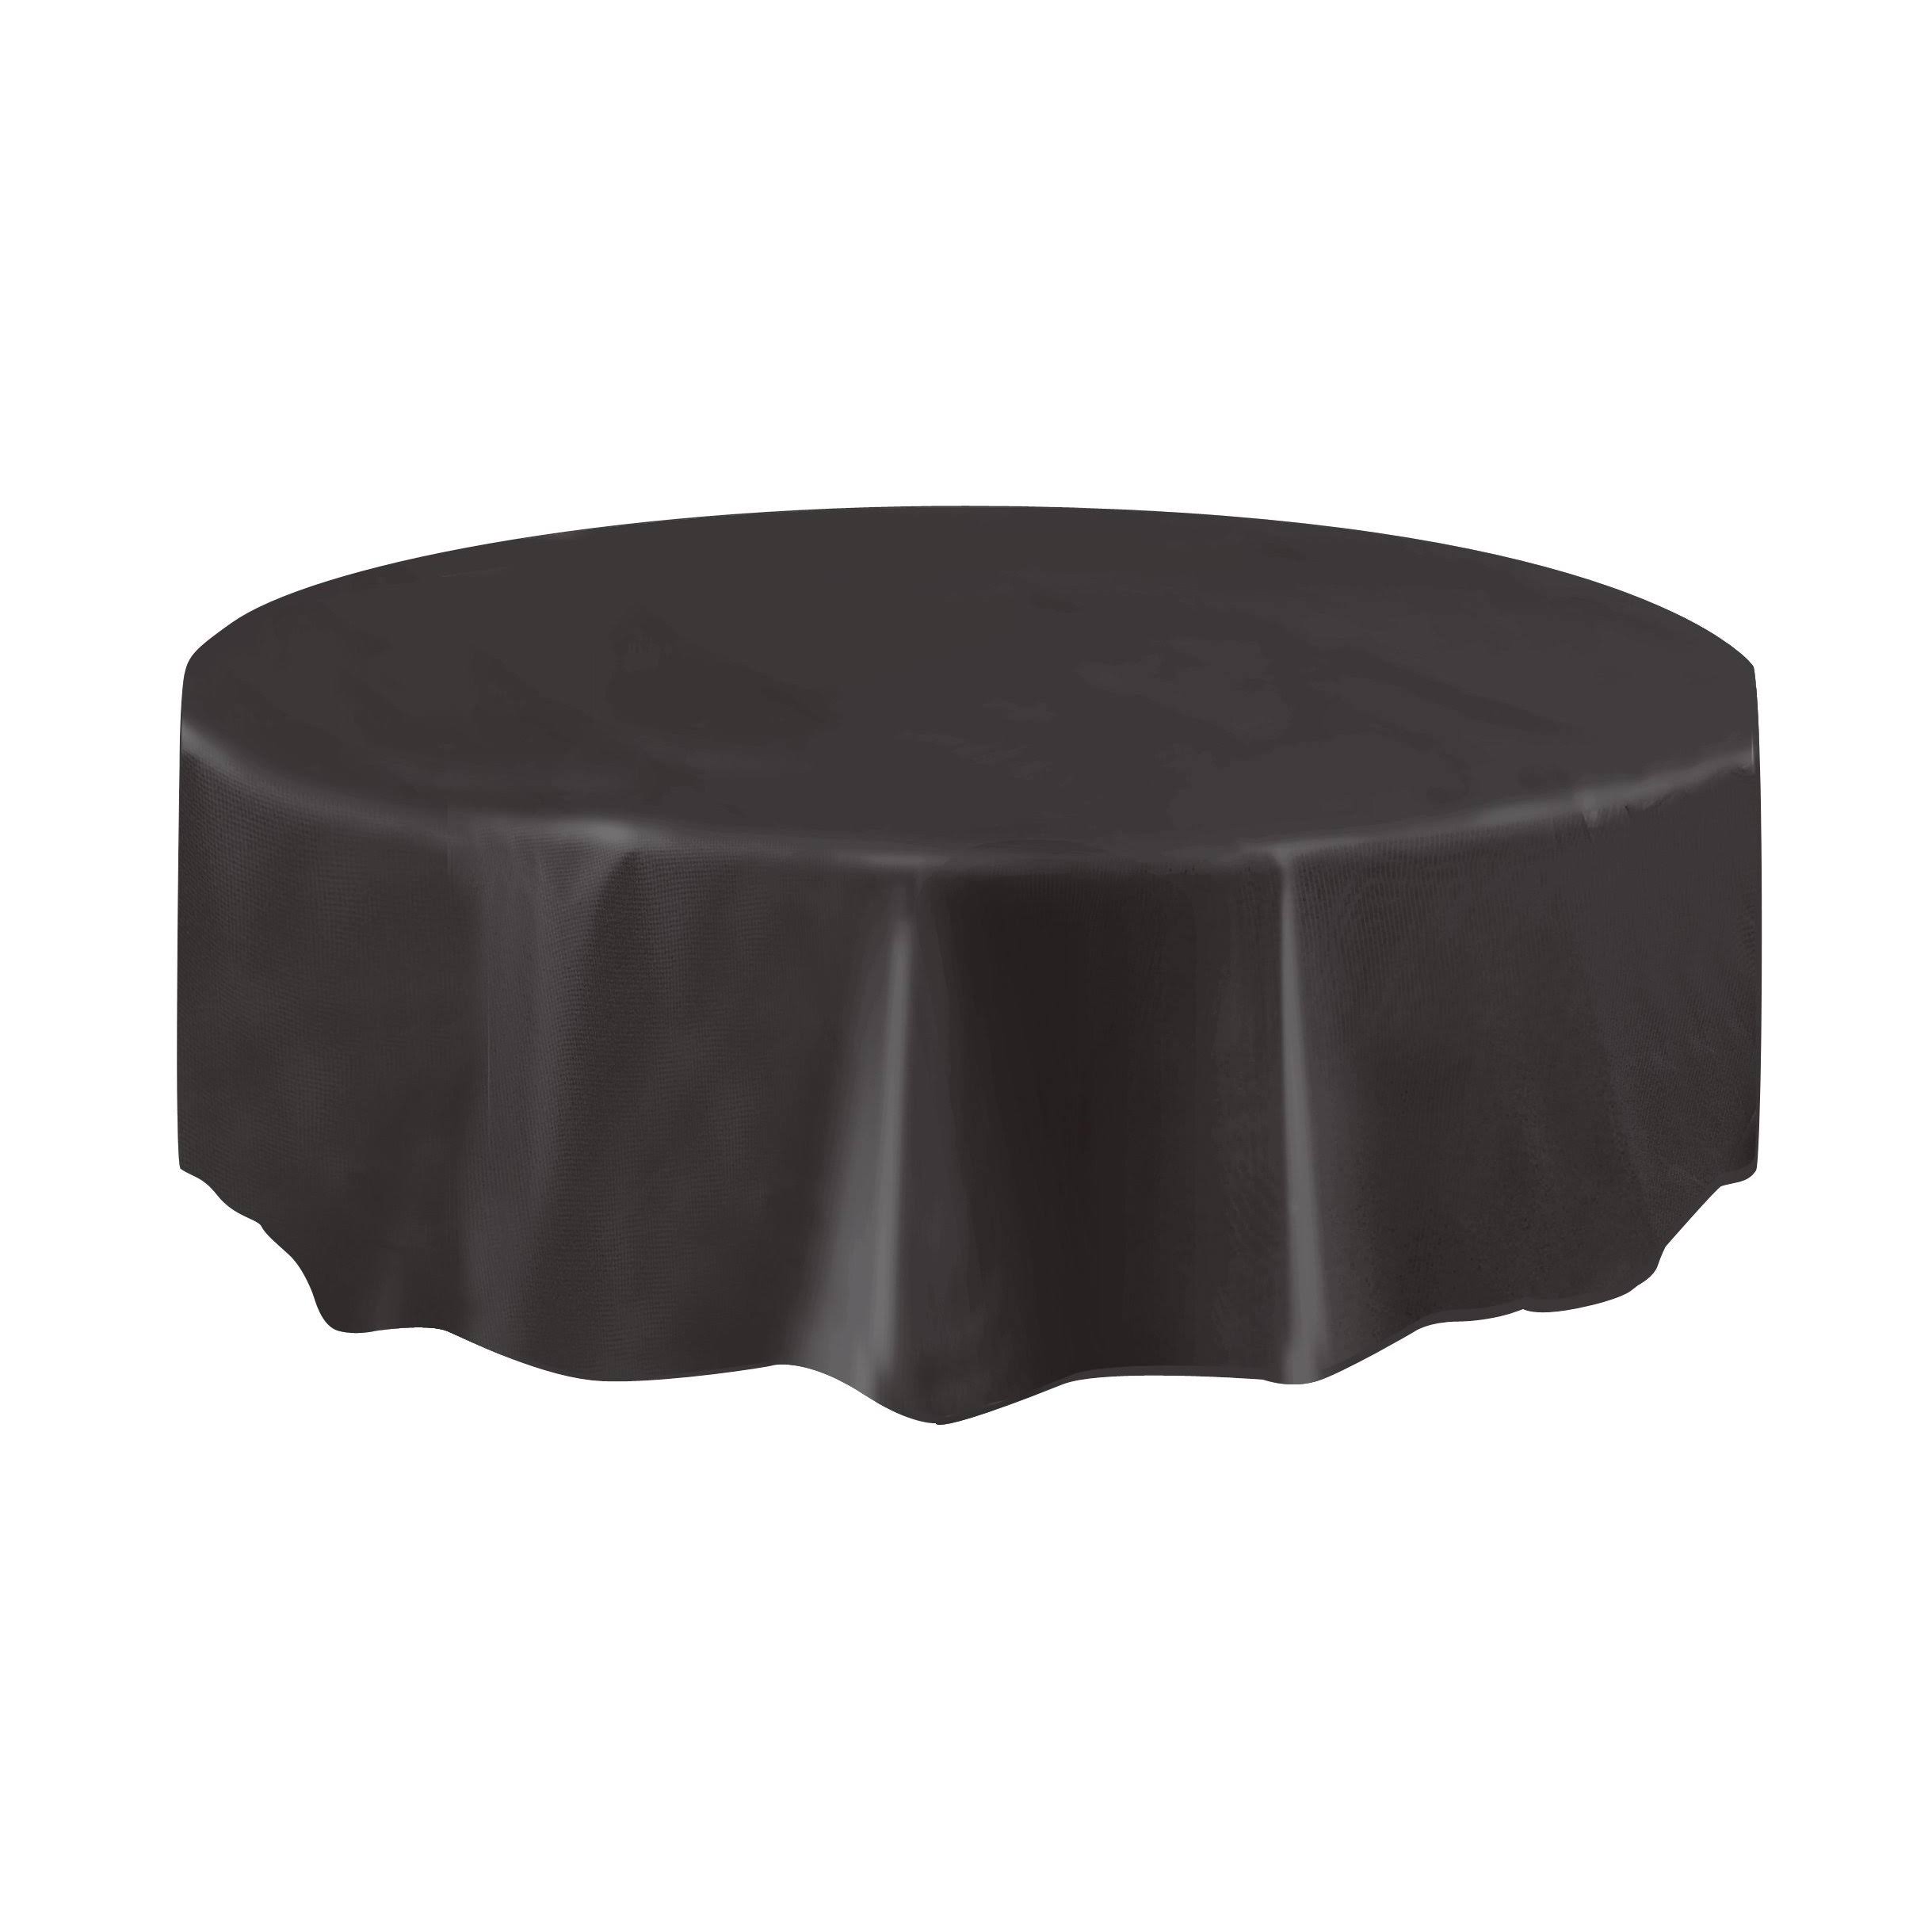 Unique Round Plastic Table Cover - 84", Black